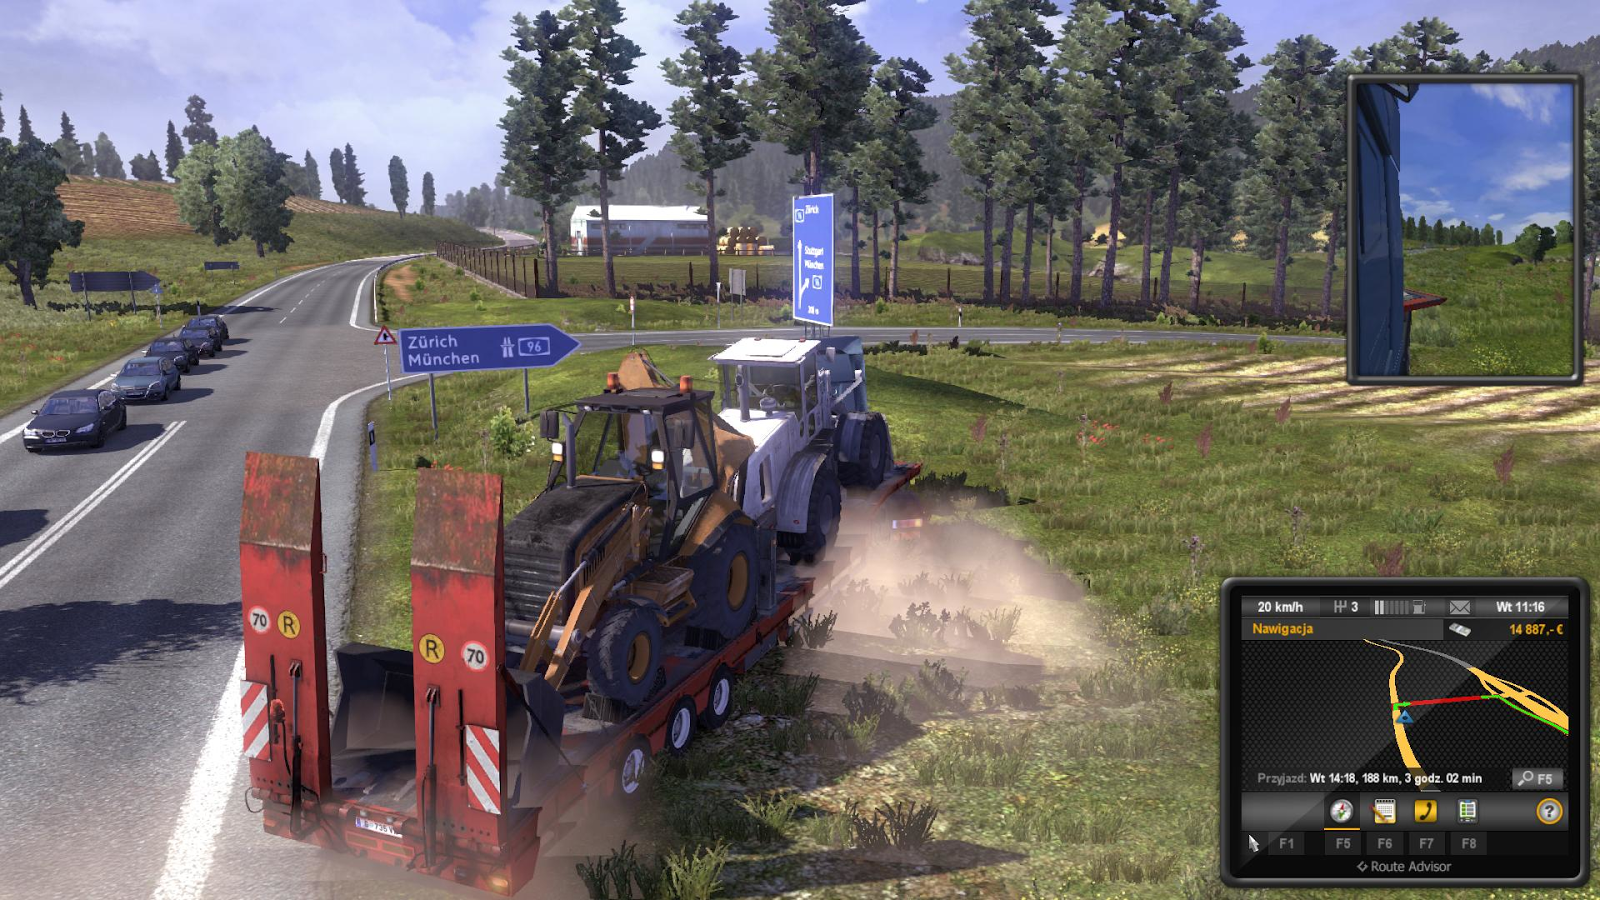 Euro Truck Simulator 2 Full Version Game Download Pcgamefreetop